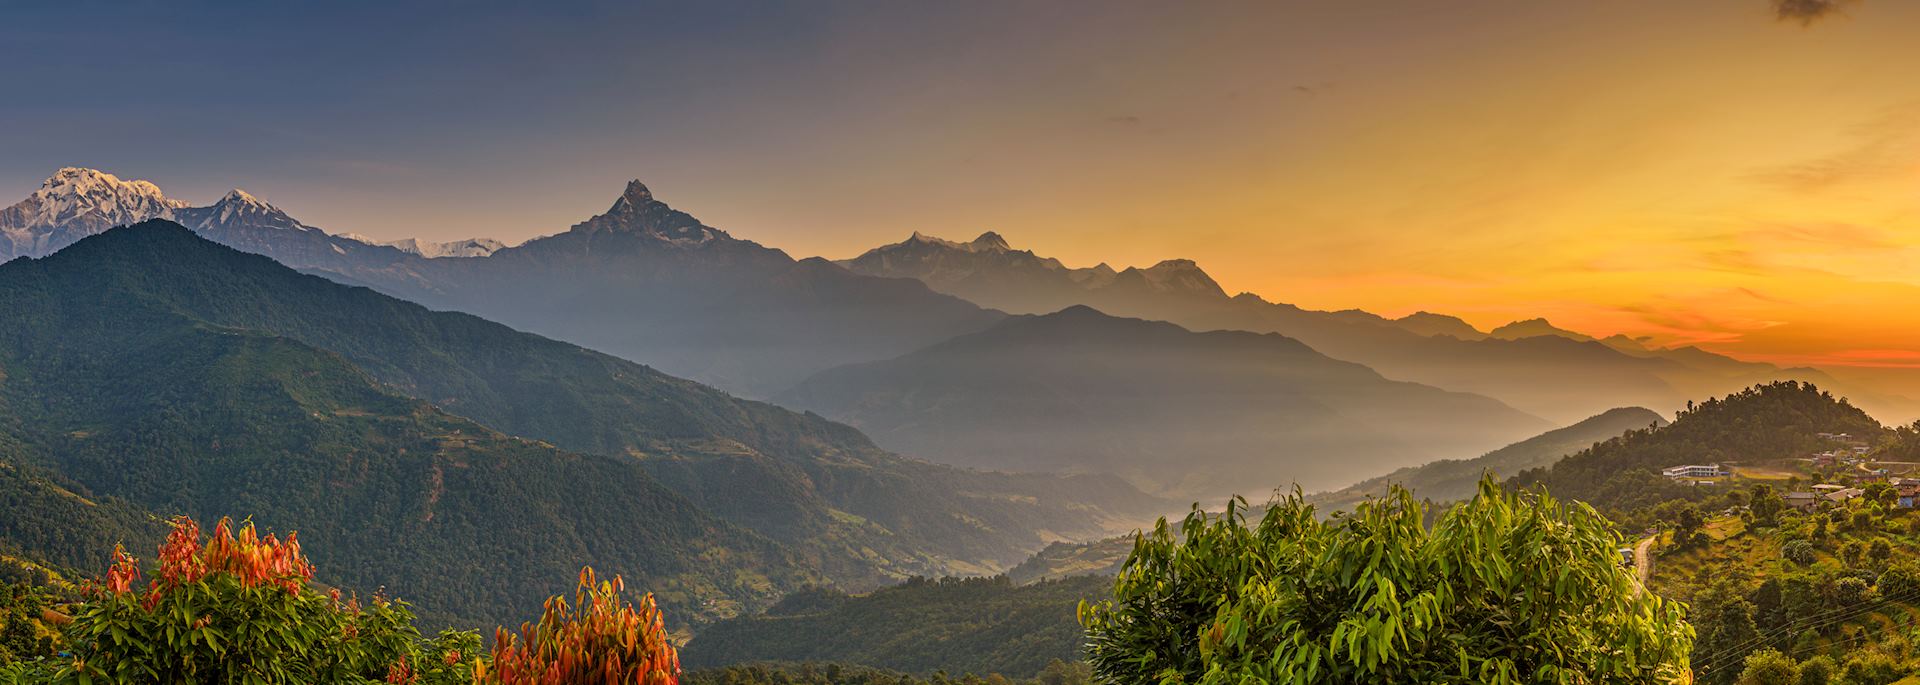 Sunrise over the Himalaya, Pokhara